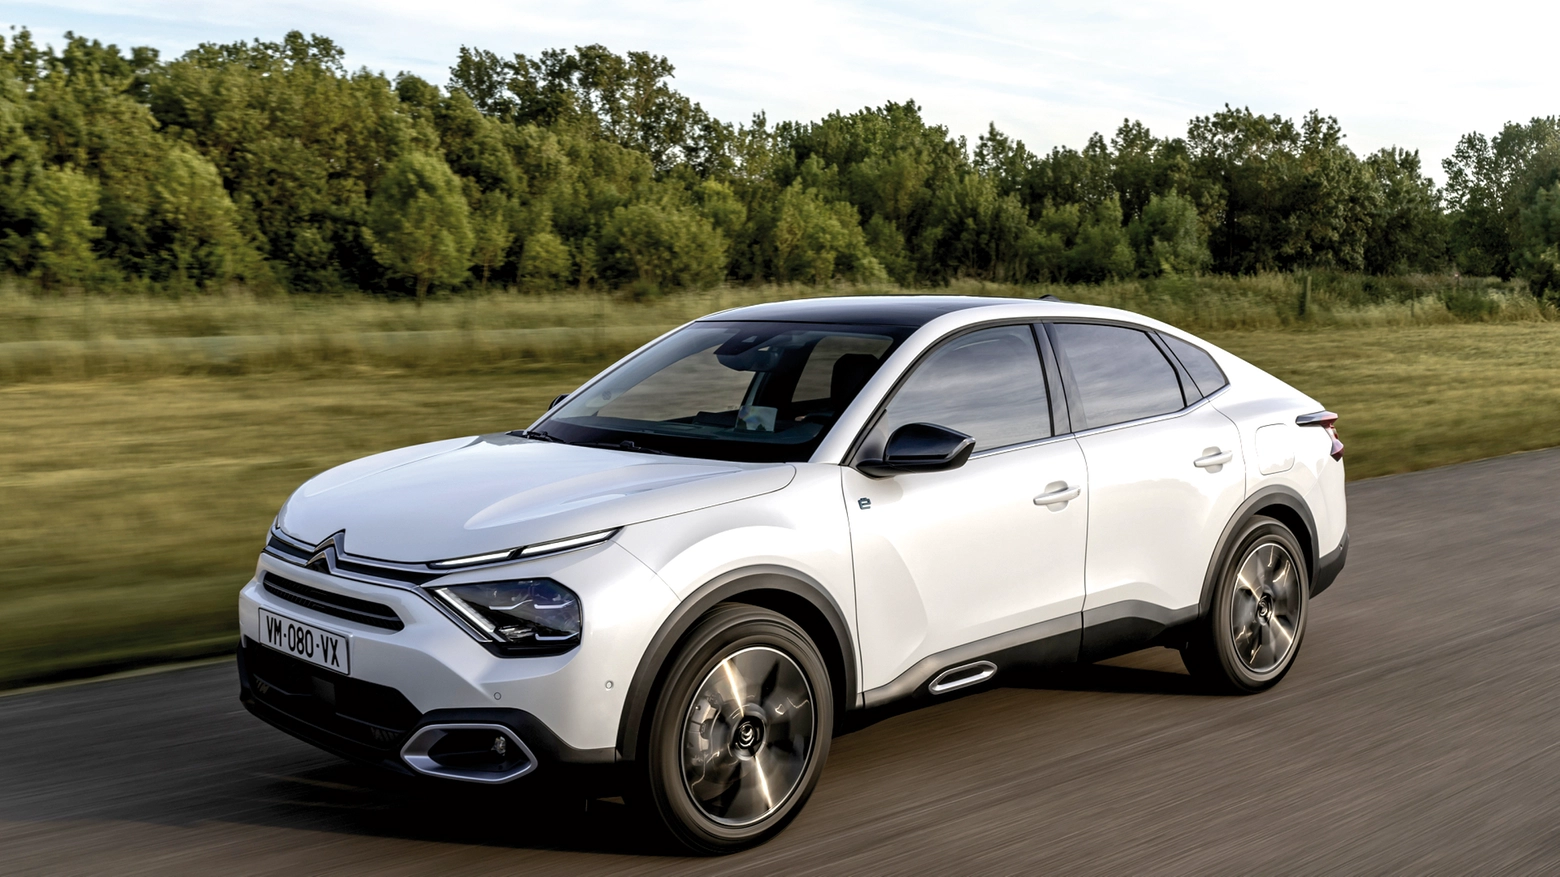 Crossover / La nuova Citroën unisce le linee di un Suv a quelle sportive e dinamiche di una fastback